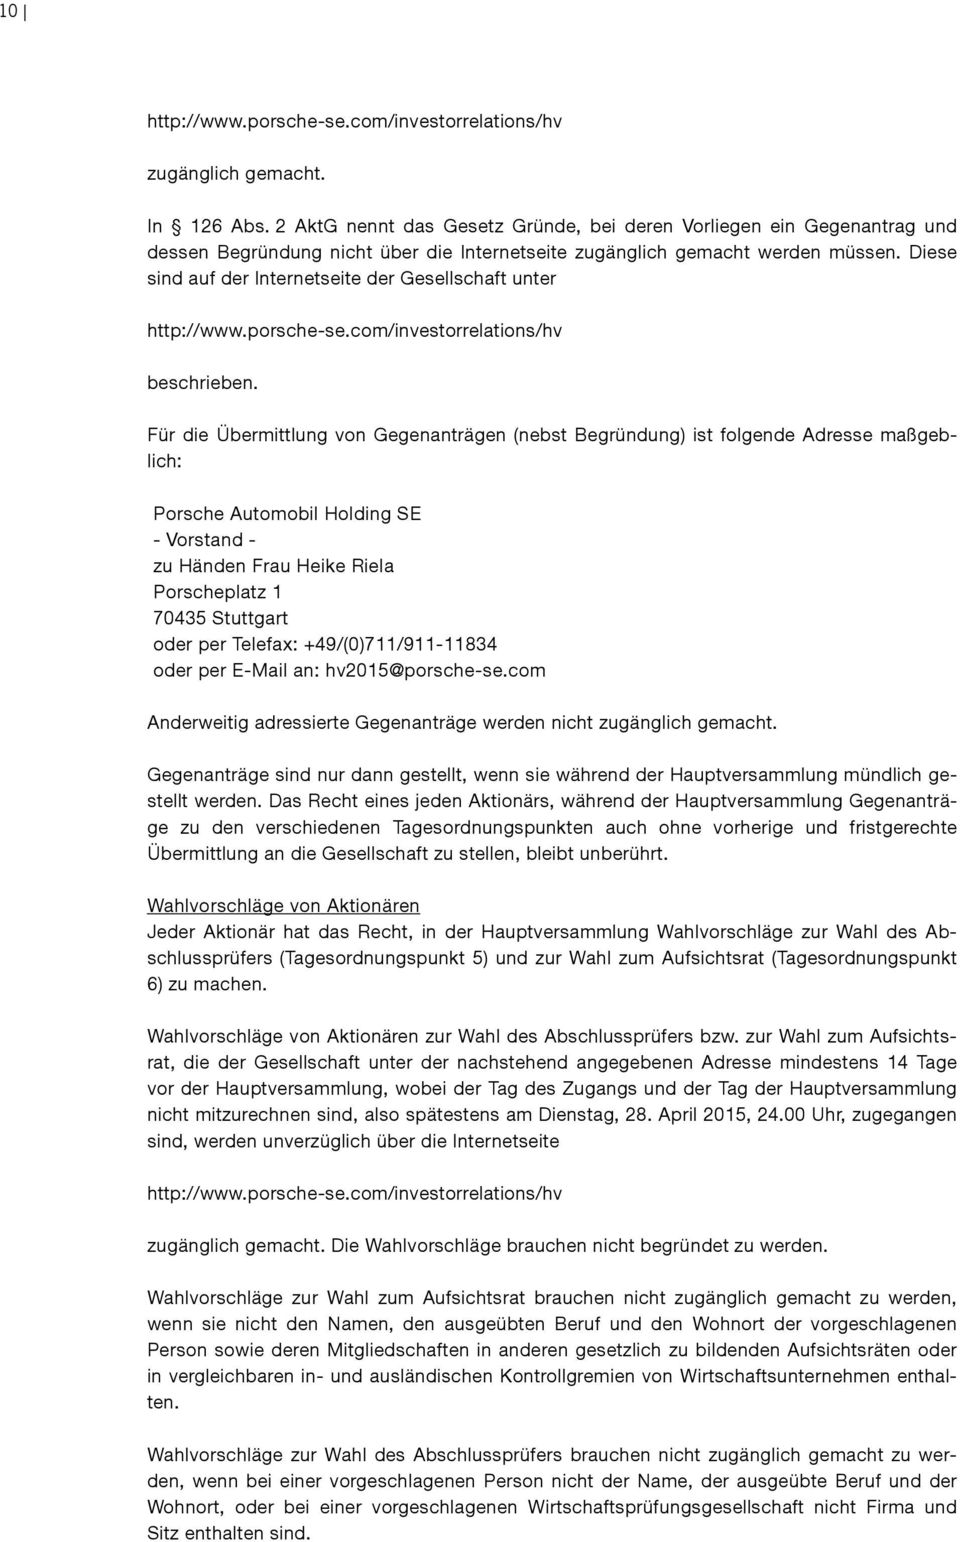 Für die Übermittlung von Gegenanträgen (nebst Begründung) ist folgende Adresse maßgeblich: - Vorstand - zu Händen Frau Heike Riela Porscheplatz 1 70435 Stuttgart oder per Telefax: